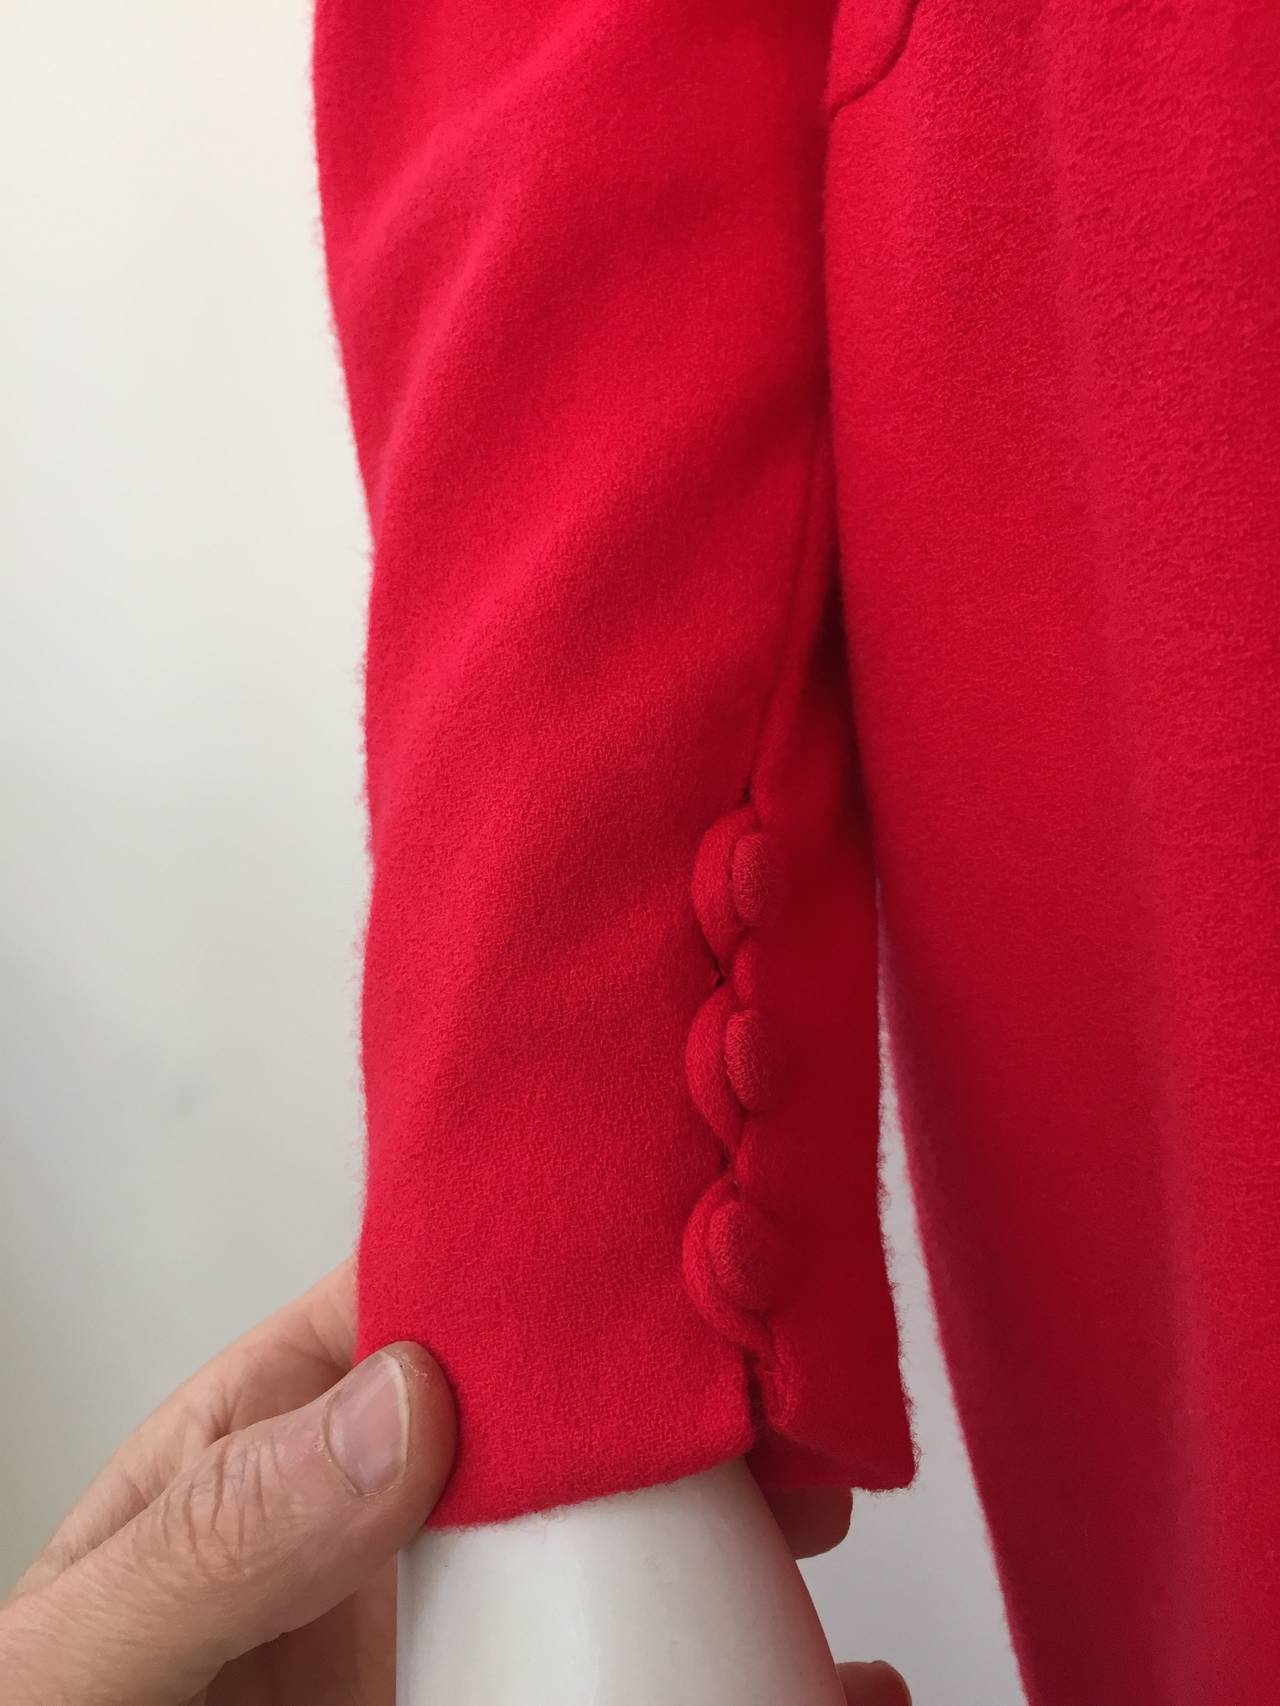 Women's Bill Blass 1970s Red Wool Dress Size 10 / 12. For Sale